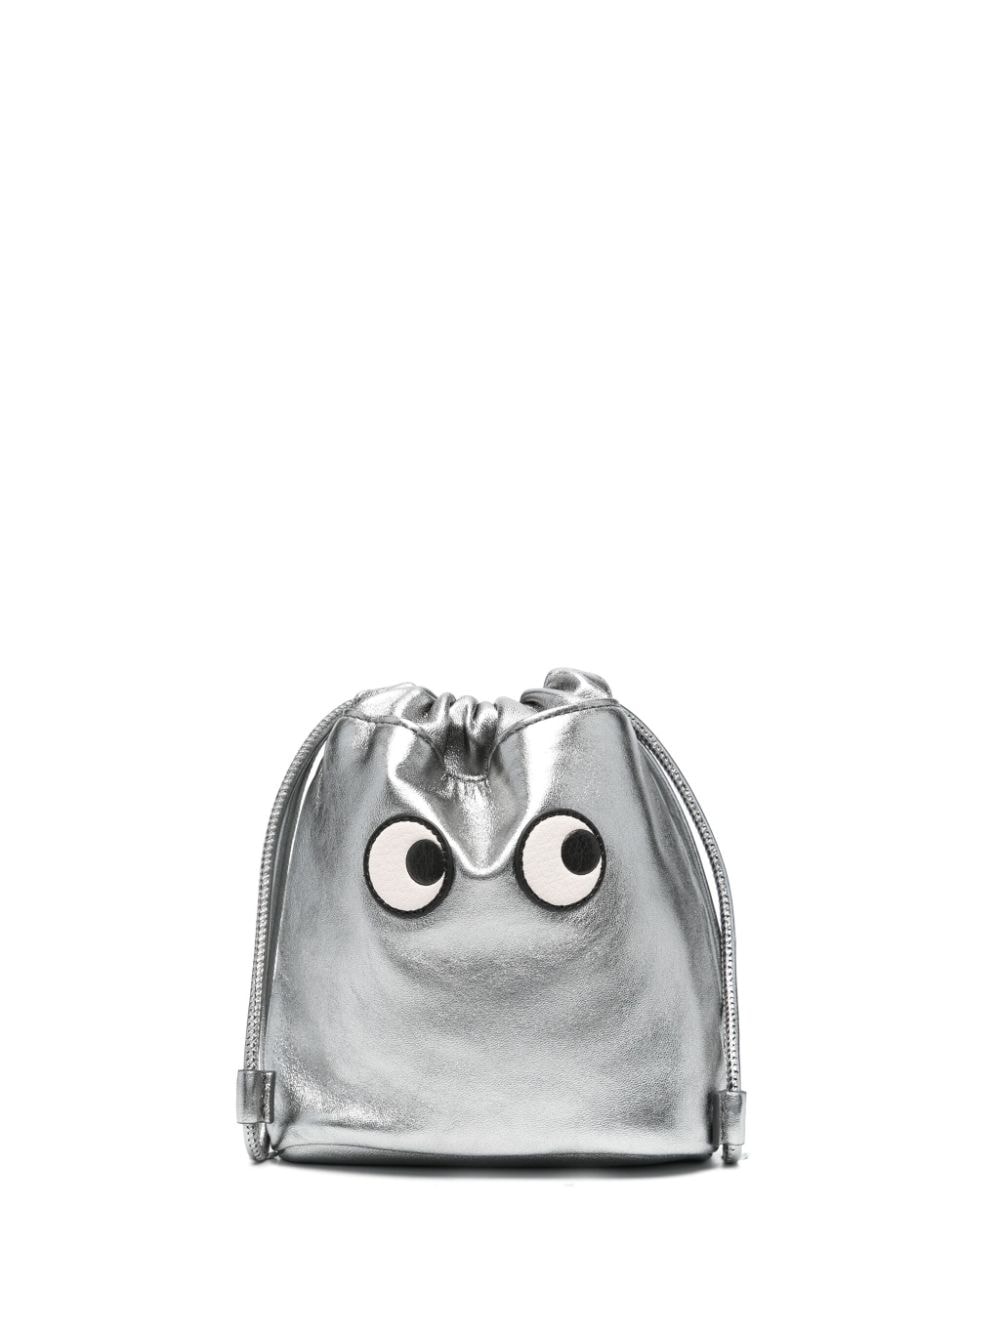 Anya Hindmarch Eyes drawstring clutch bag - Silver von Anya Hindmarch